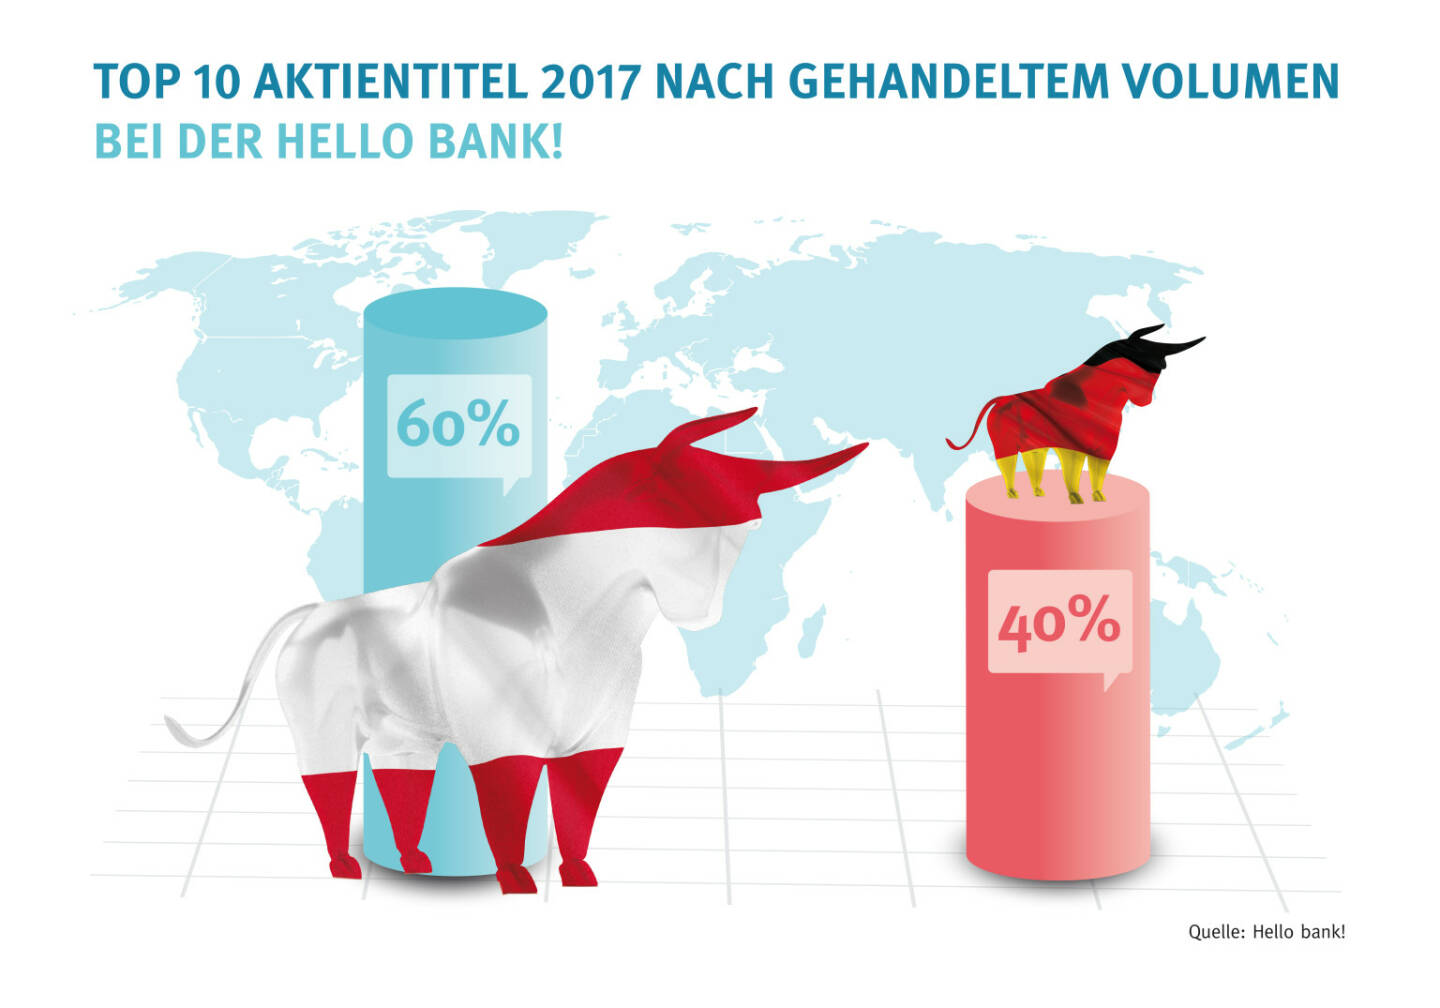 Hello bank! mit neuem Preismodell und Flat Fee für die Wiener Börse, die Märkte der Top 10 Aktientitel 2017 nach gehandeltem Volumen bei der Hello bank! - Credit: Hello bank!